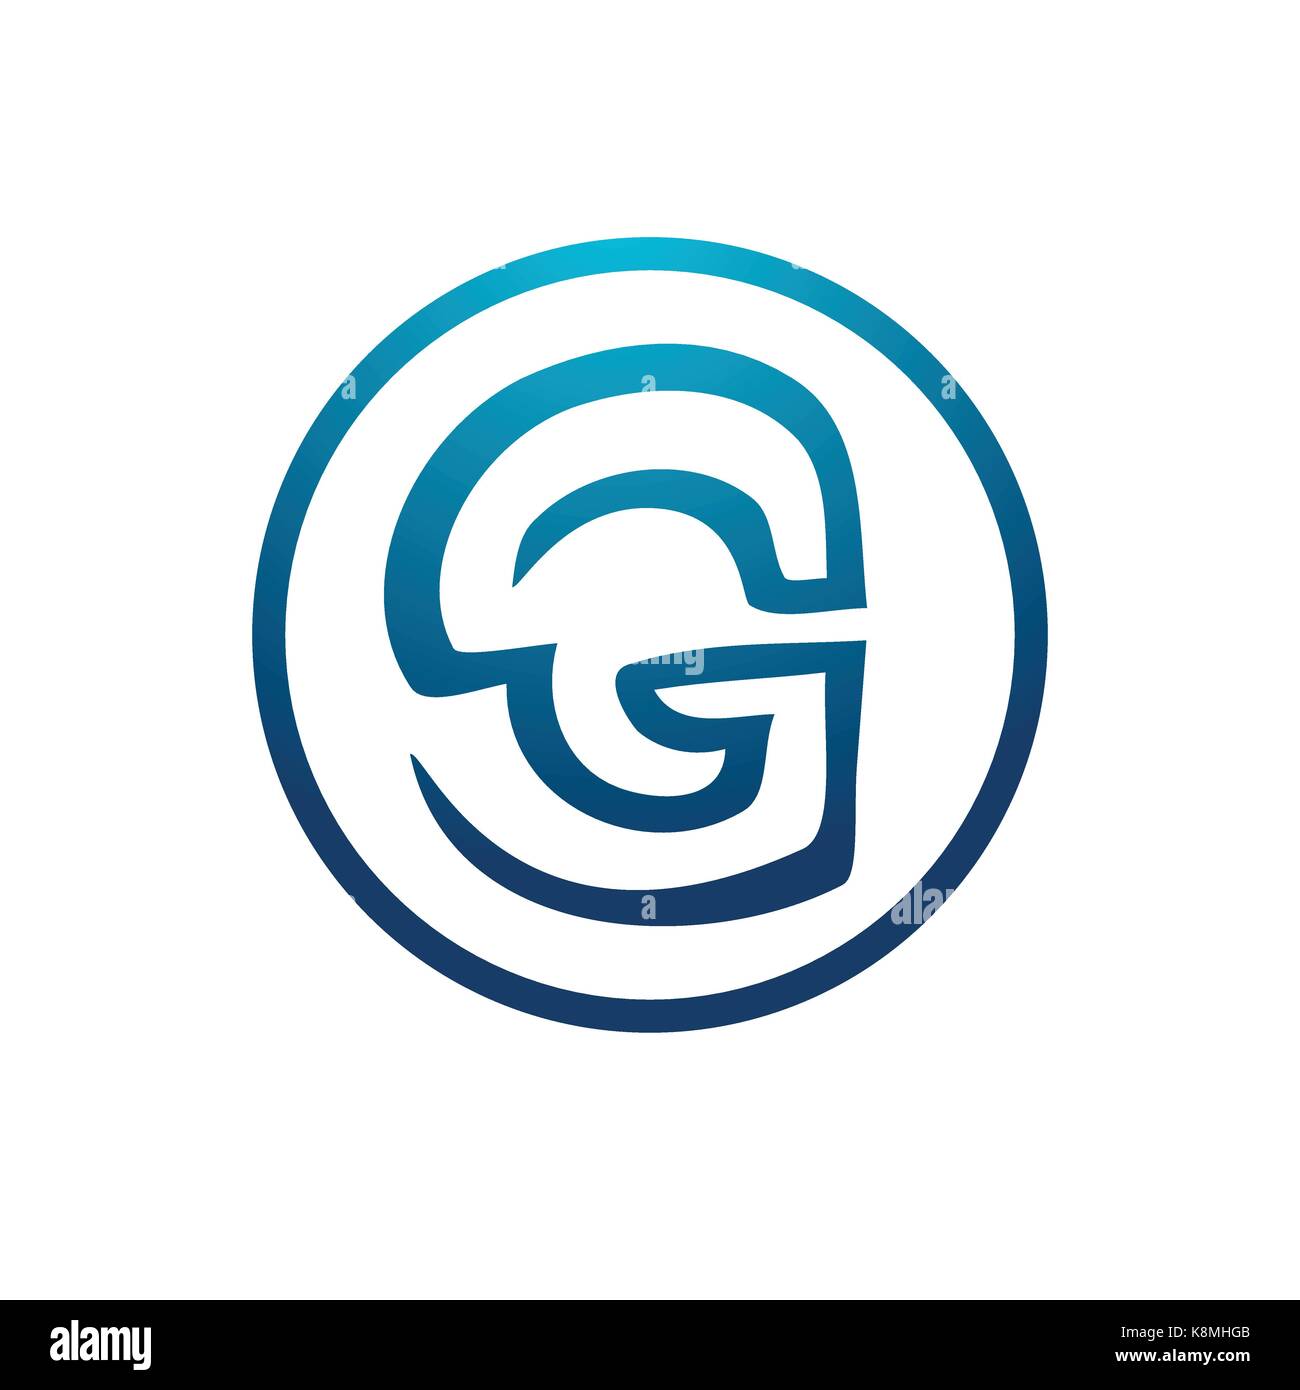 Lettera g entro un cerchio logo, icona design, isolati su sfondo bianco. Illustrazione Vettoriale